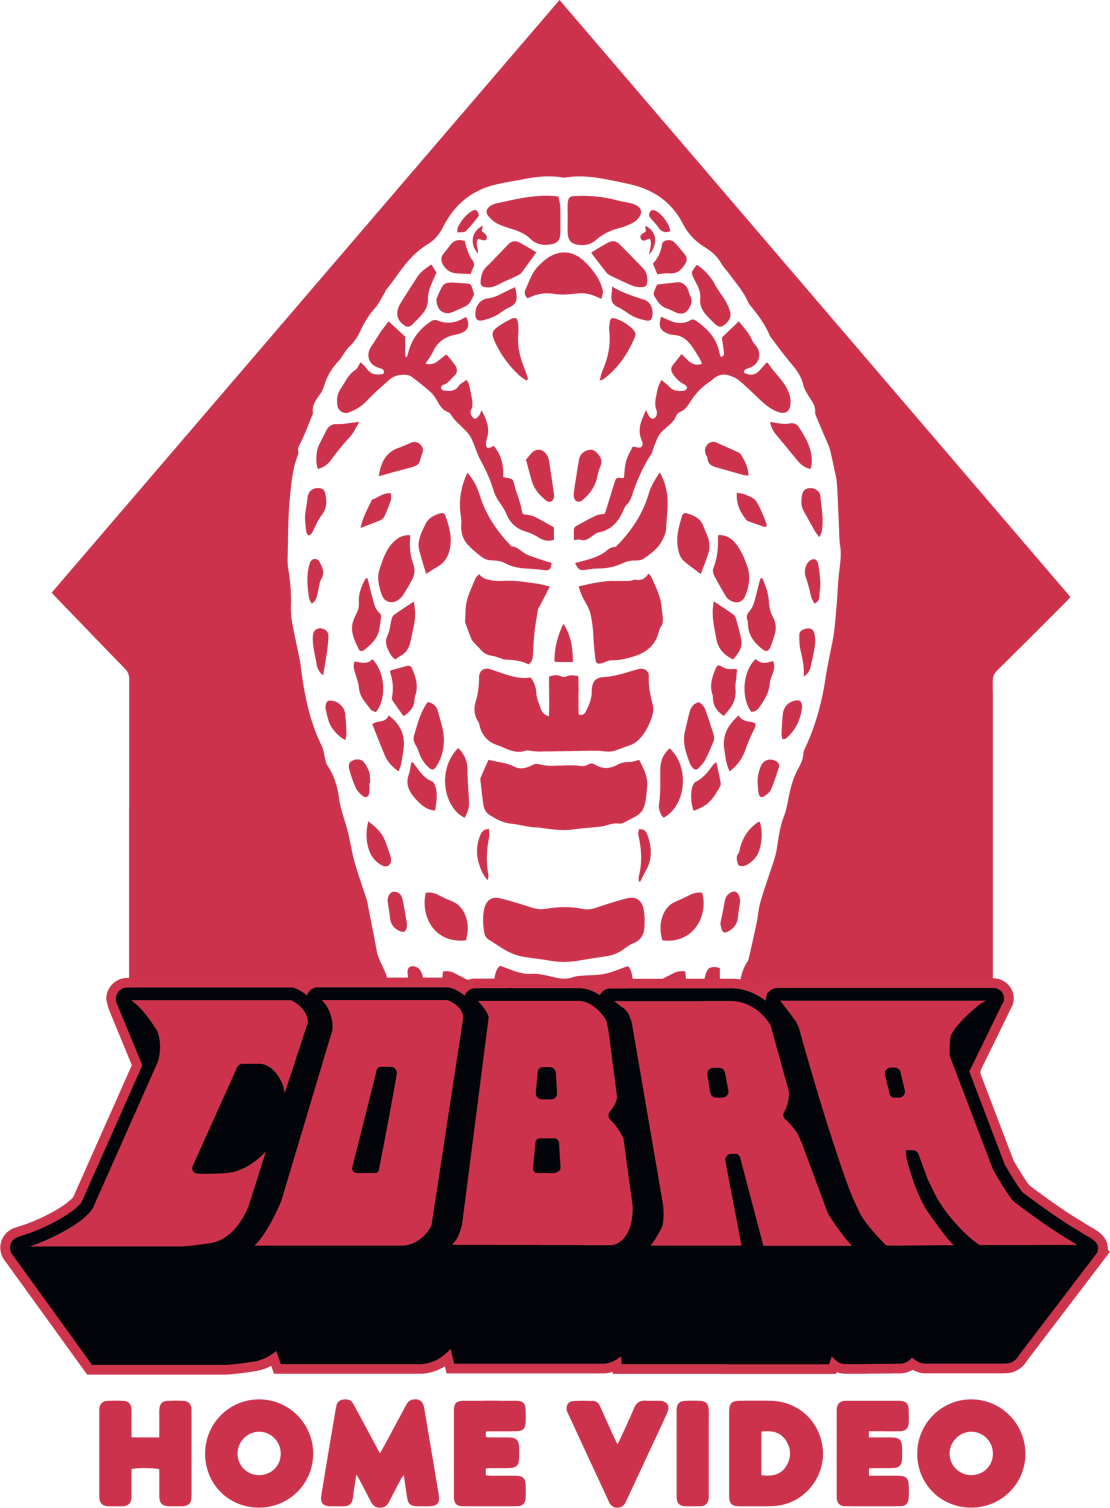 Cobra Home Video